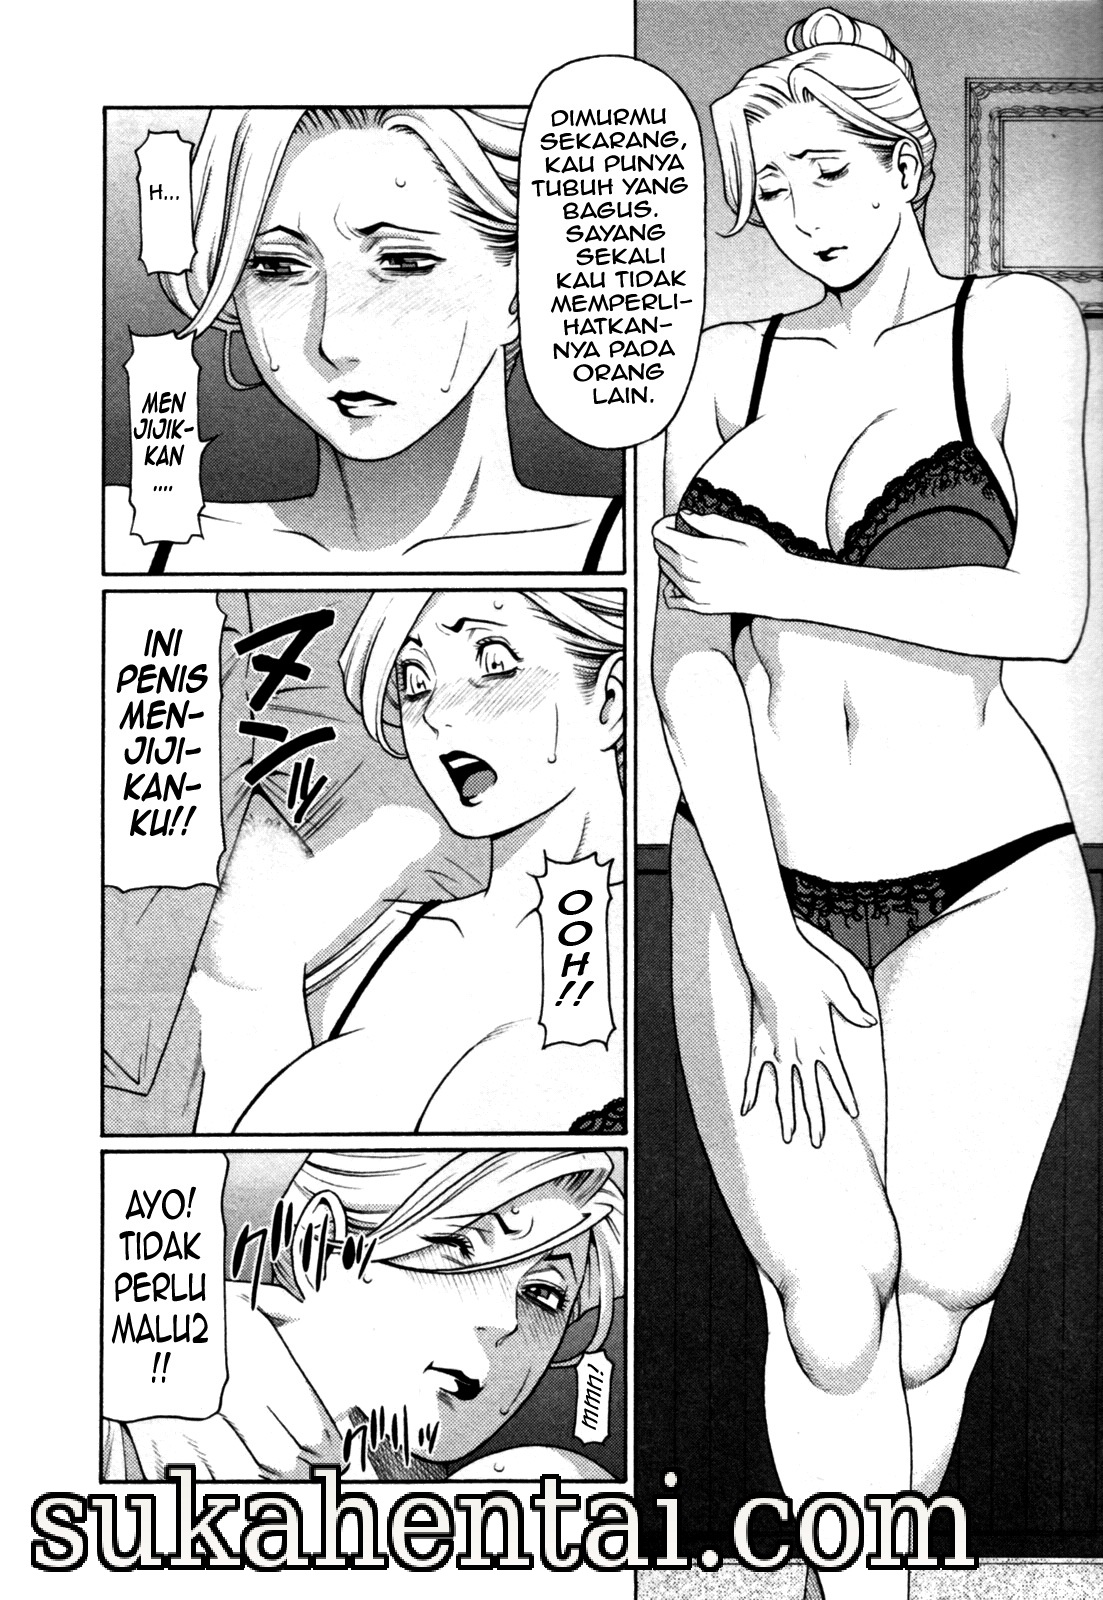 Komik Sex Tante Diperkosa Gudang Komik Manga Hentai Sex Hot Dewasa Terbaru